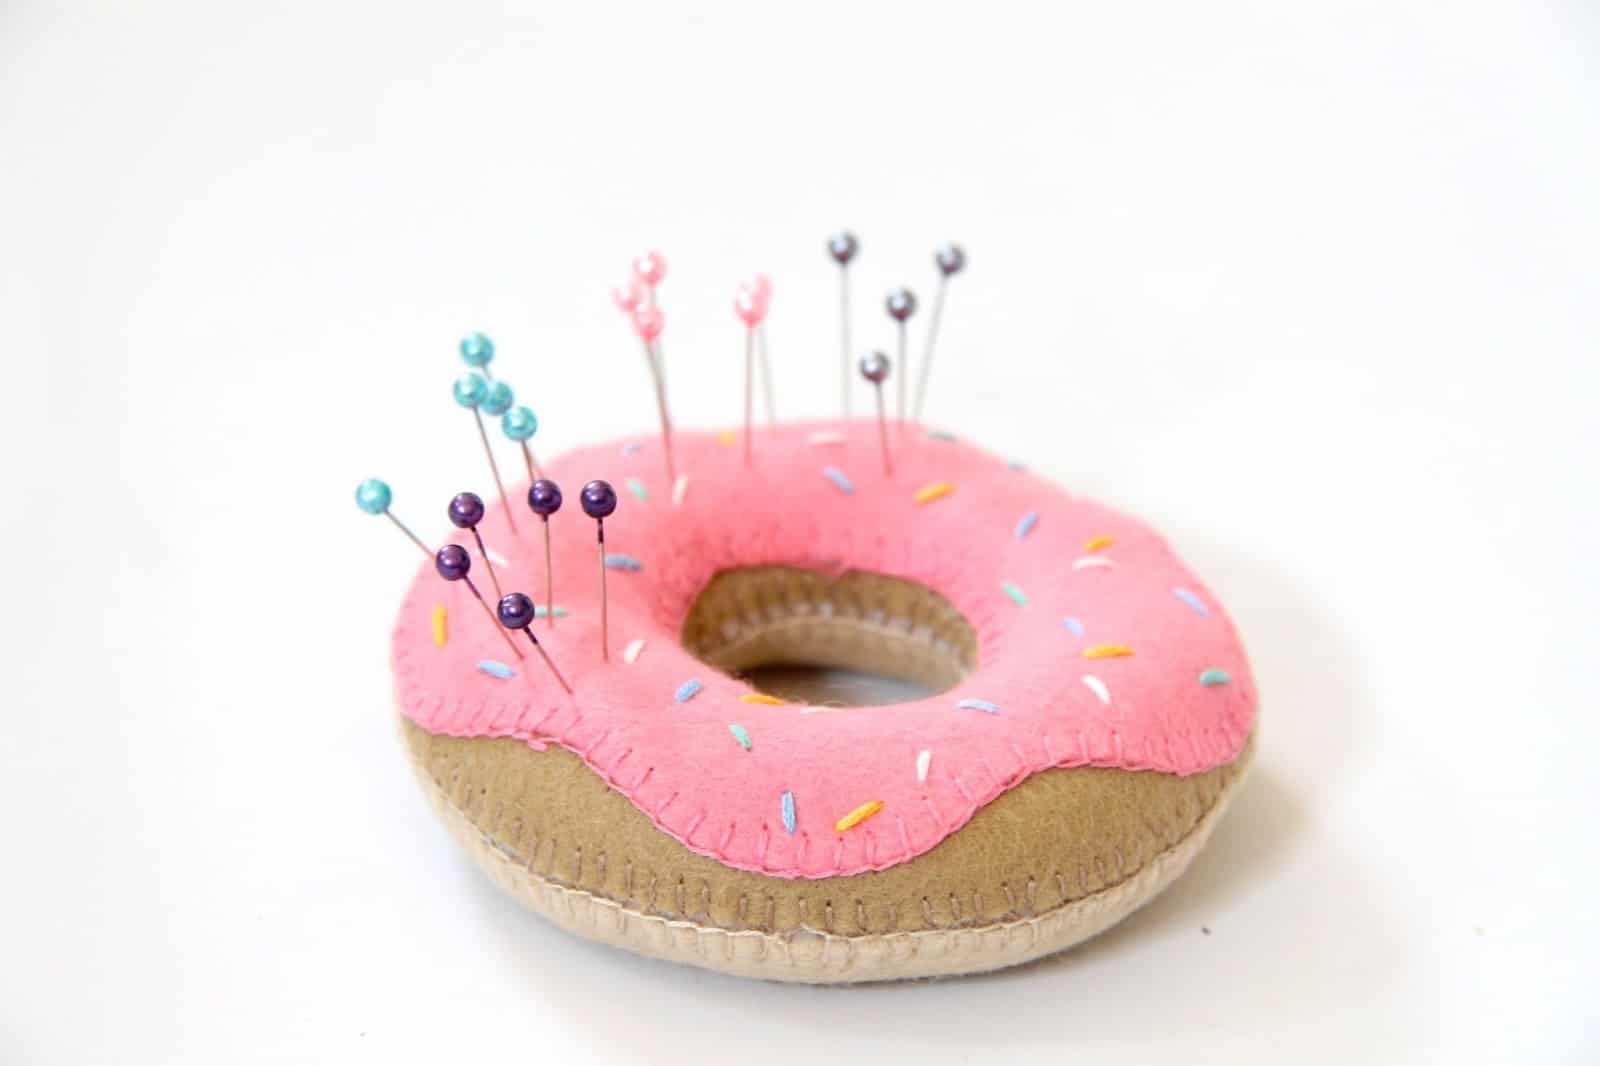 Doughnut pin cushion